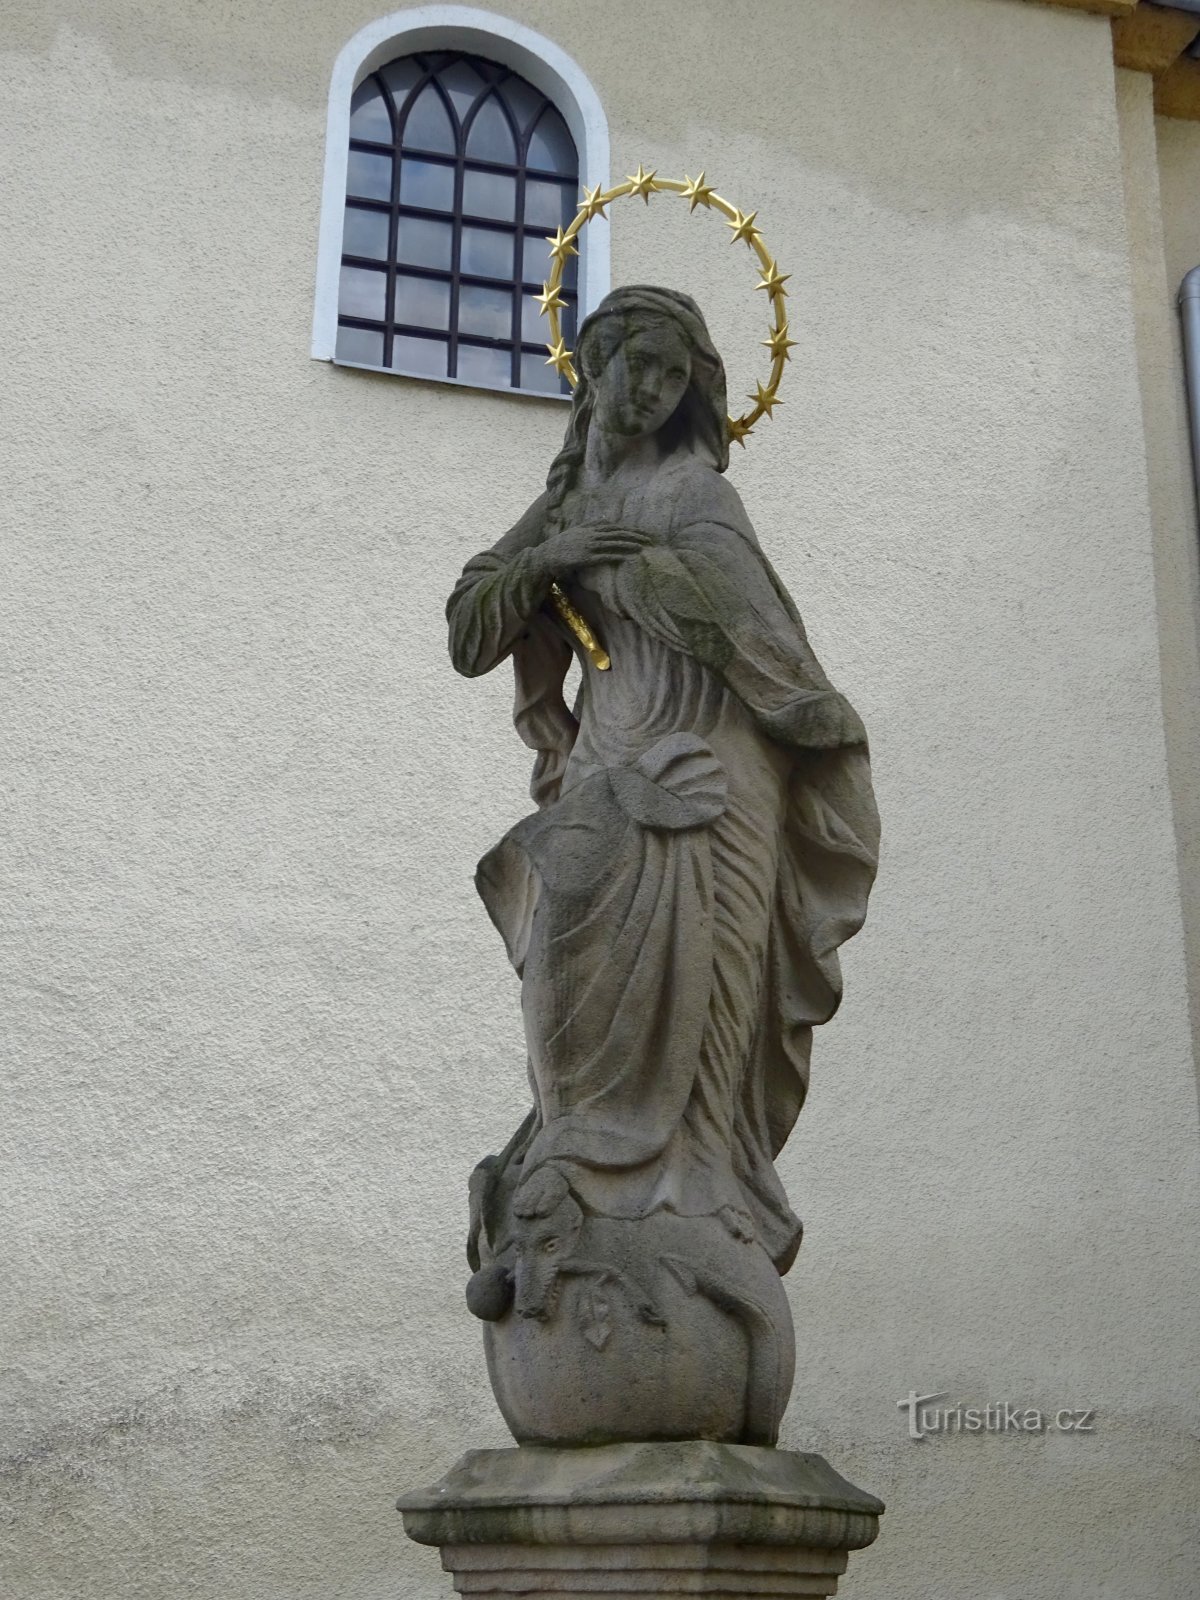 Klimkovice - Szűz Mária szobra